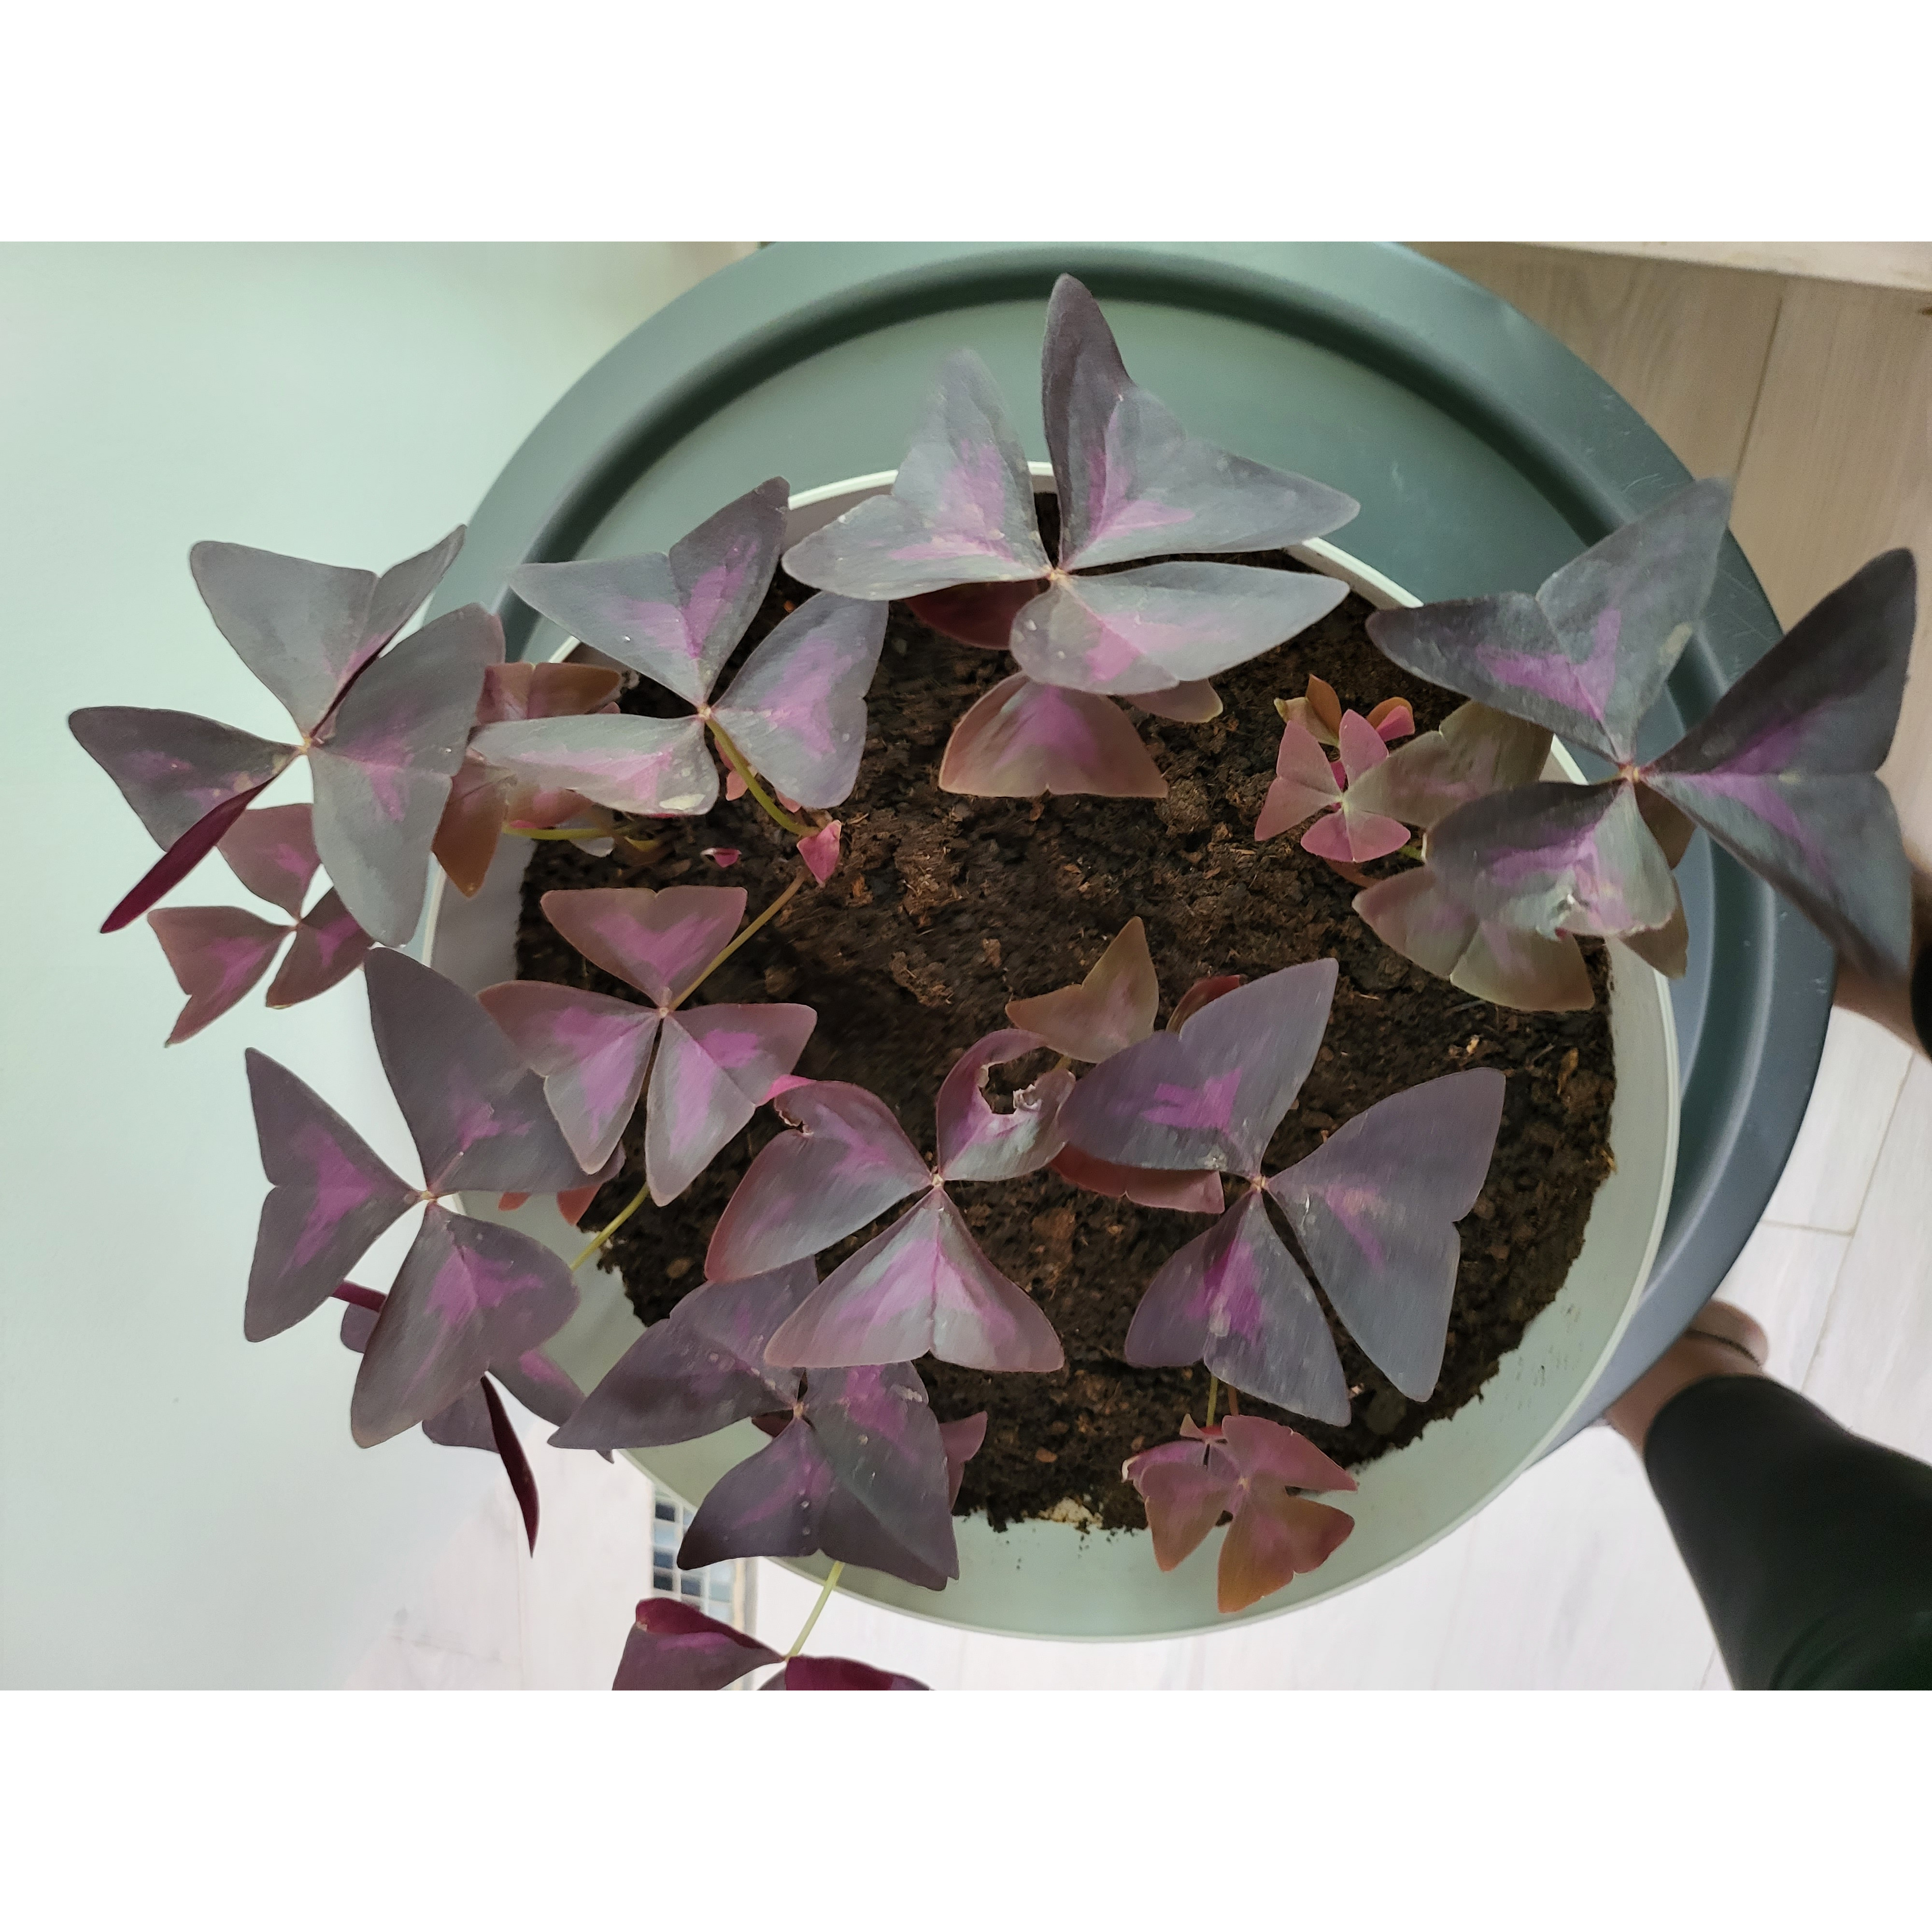 Oxalis triangulaire, Faux-trèfle à fleurs roses, Oxalis regnellii ssp  triangularis : planter, cultiver, multiplier